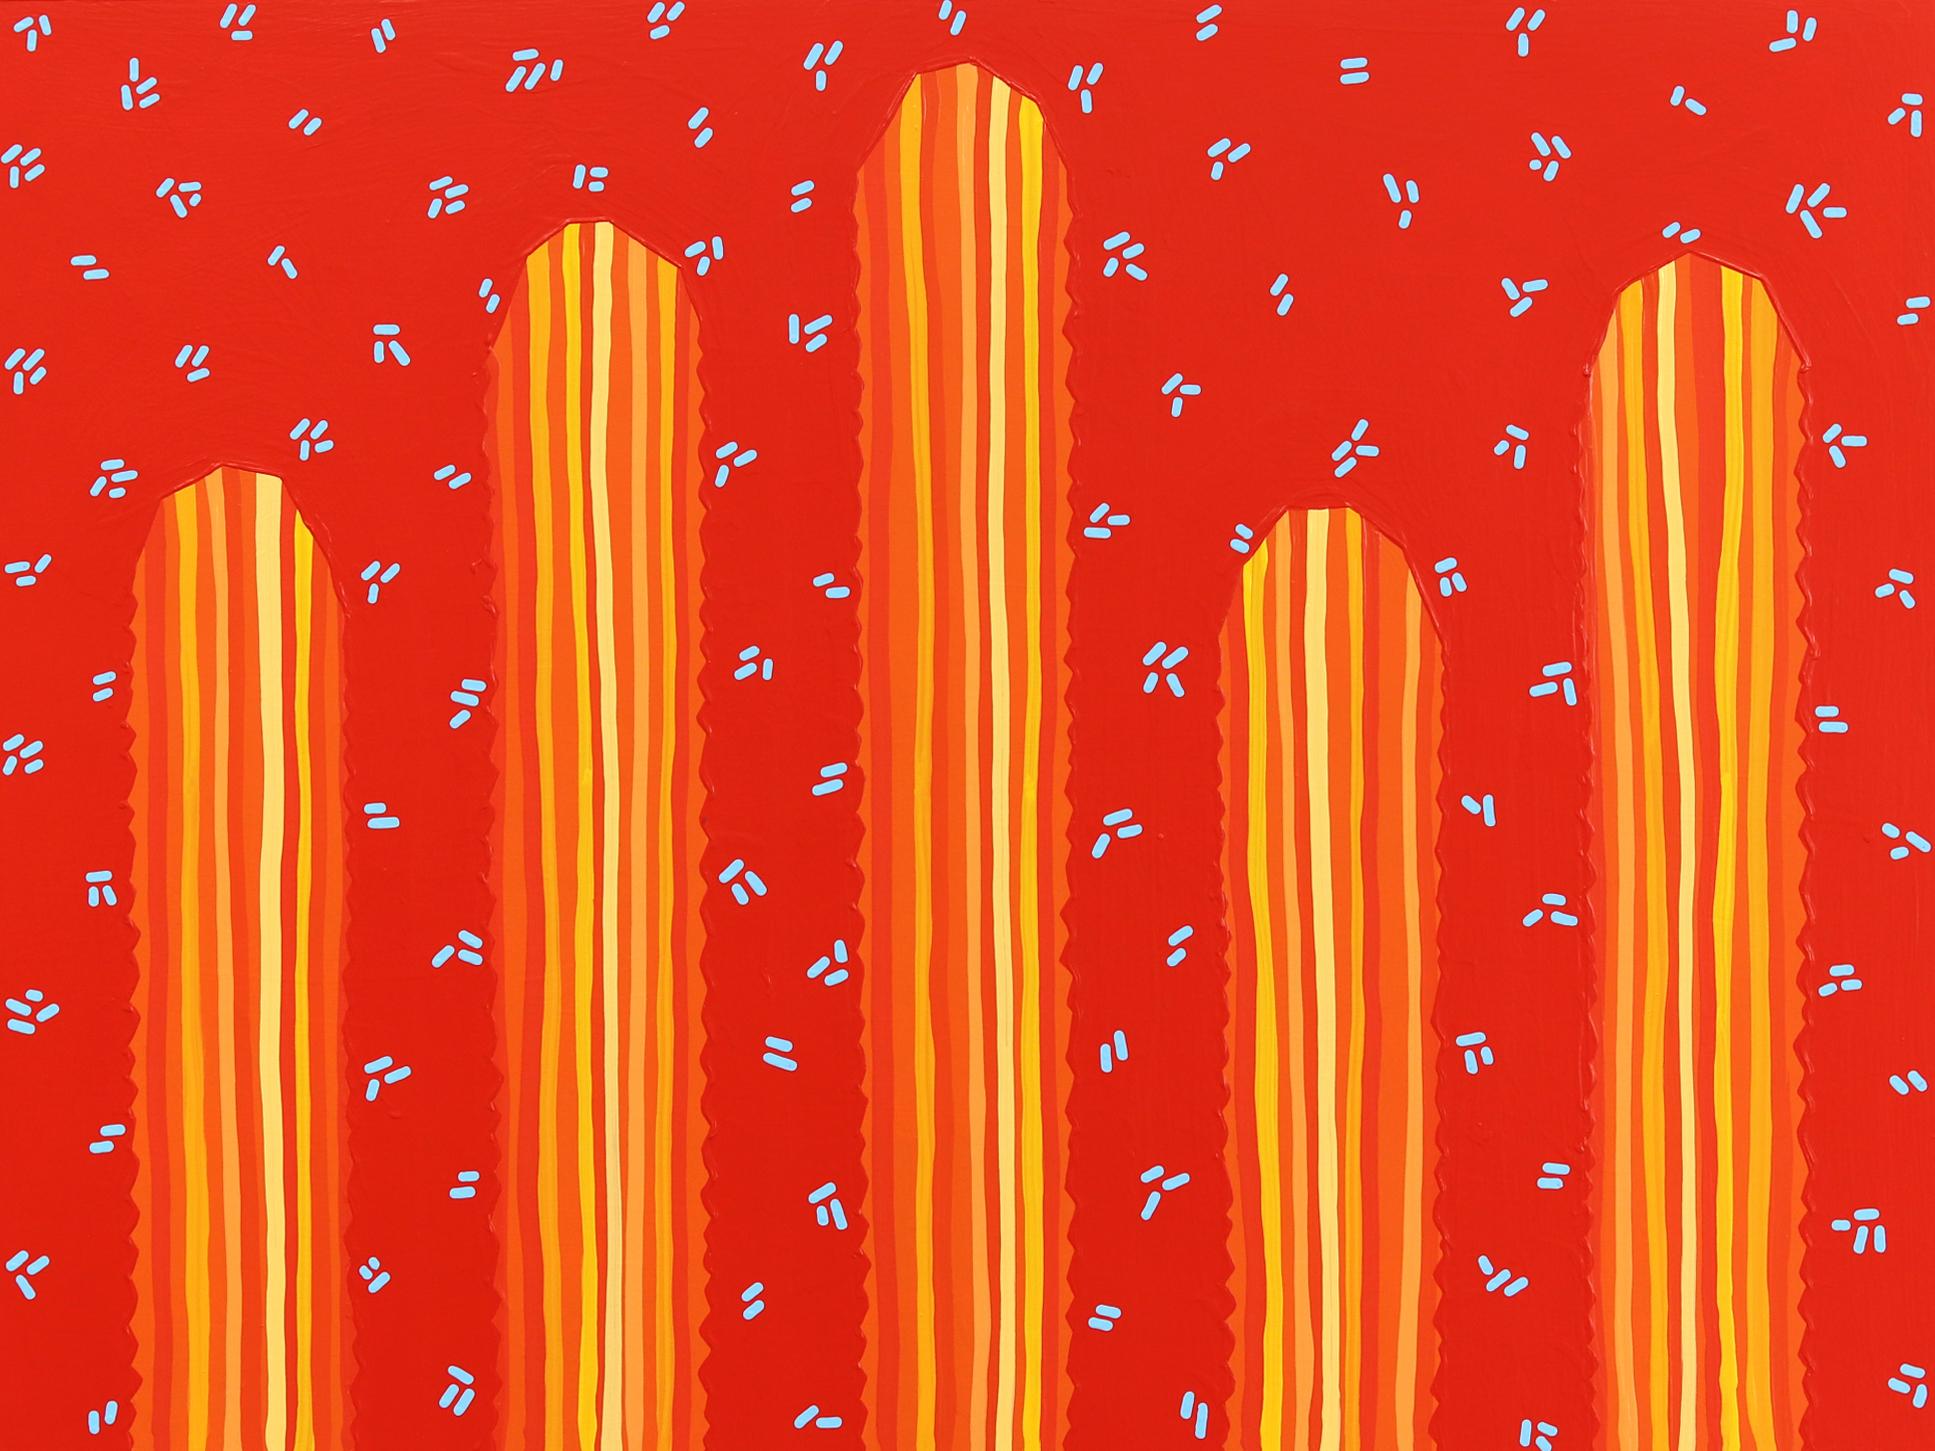 Landscape Painting Will Beger - Sedona - Peinture de cactus d'inspiration Pop Art d'inspiration Sud-Ouest rouge orange vif